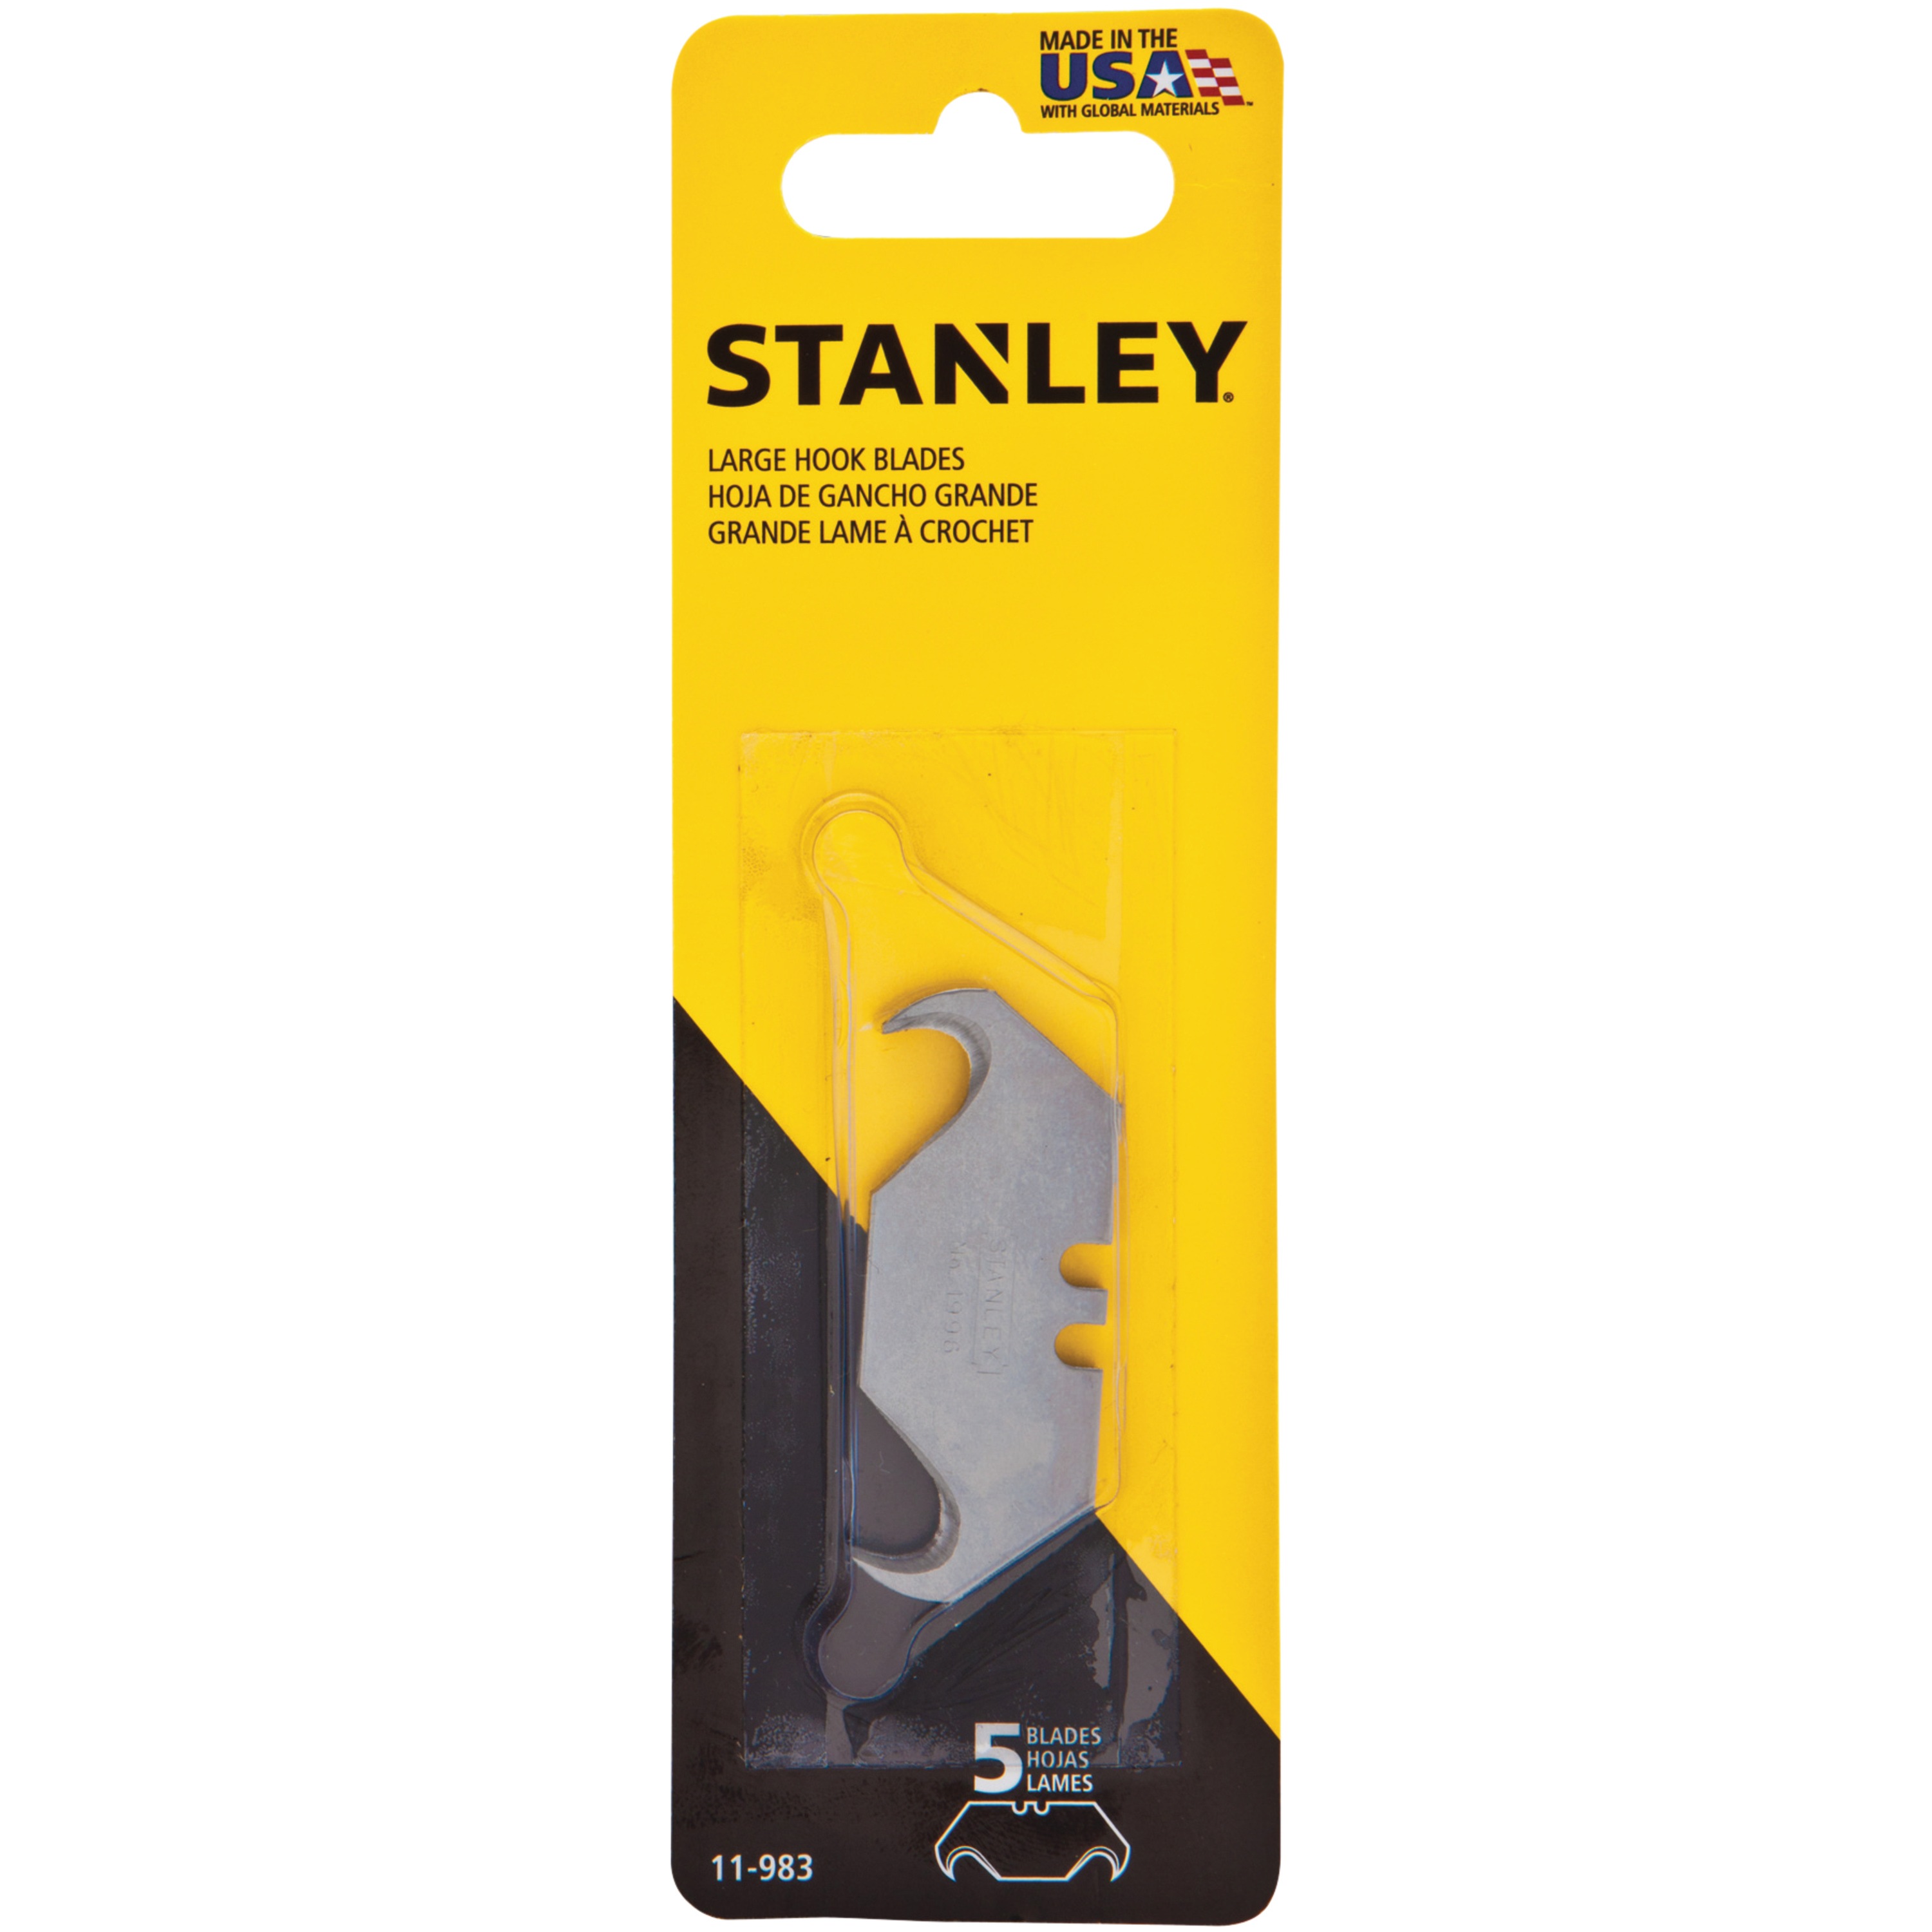 Stanley Tools - 1996 Large Hook Blades  5 Pack - 11-983